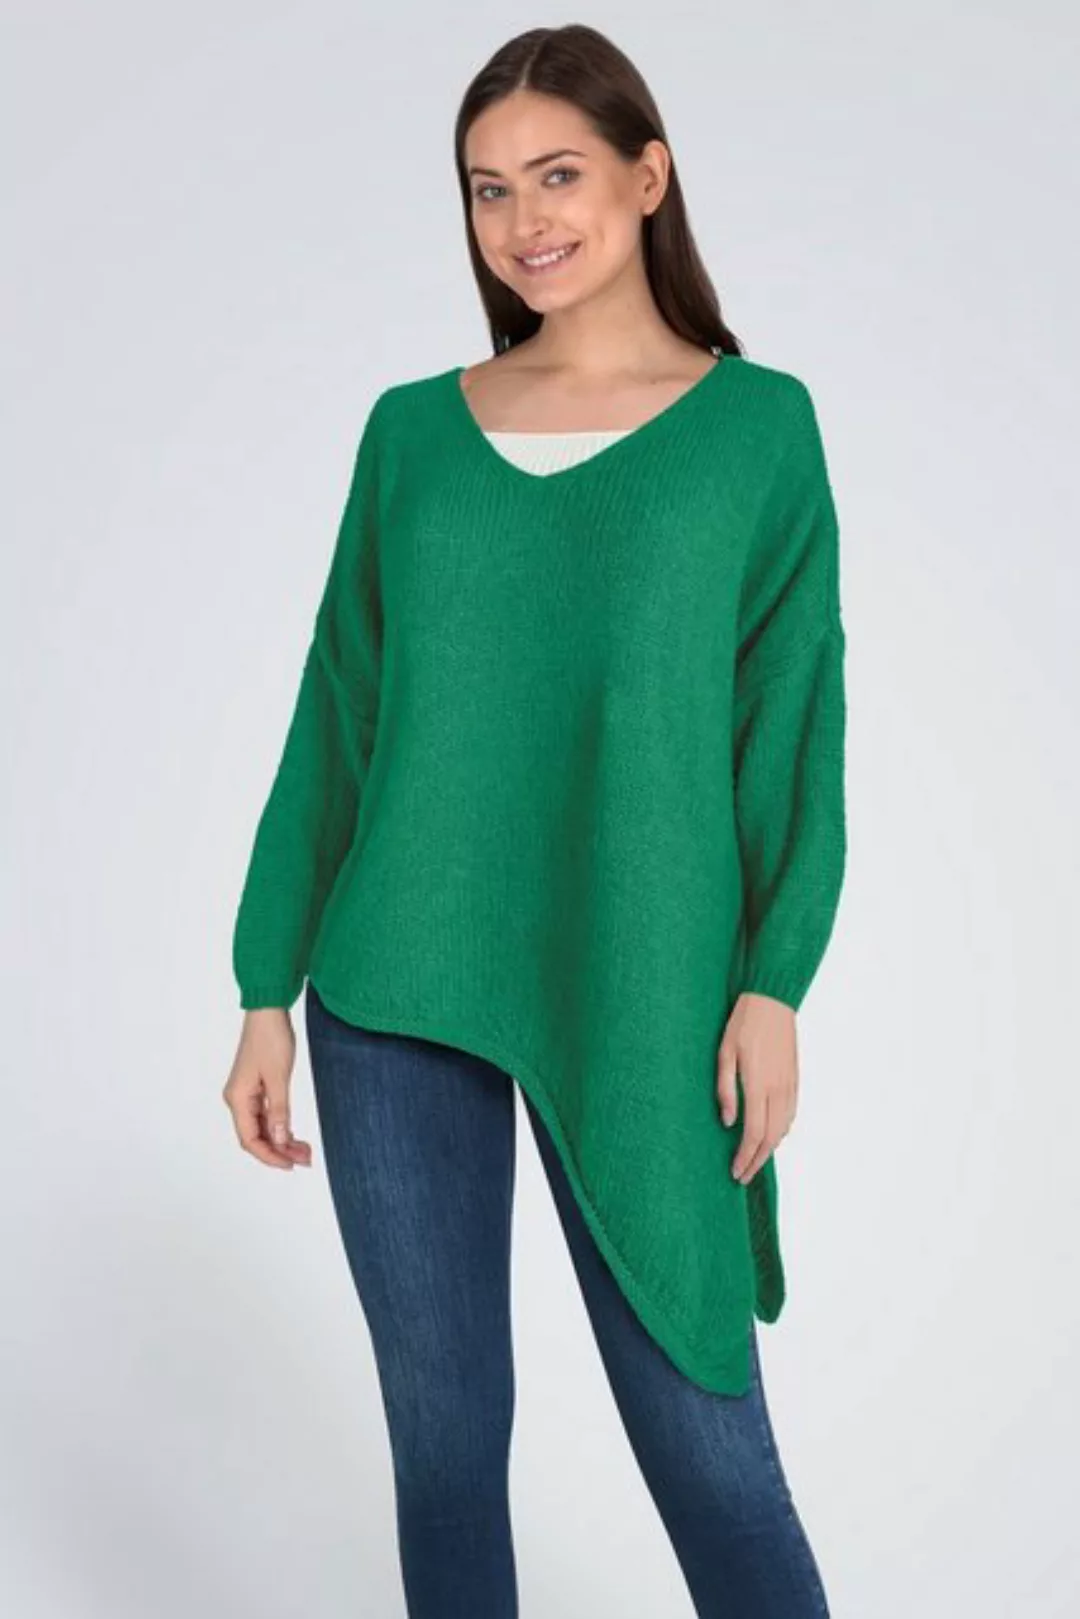 PEKIVESSA Strickpullover Asymmetrischer Grobstrick-Pullover oversized Damen günstig online kaufen